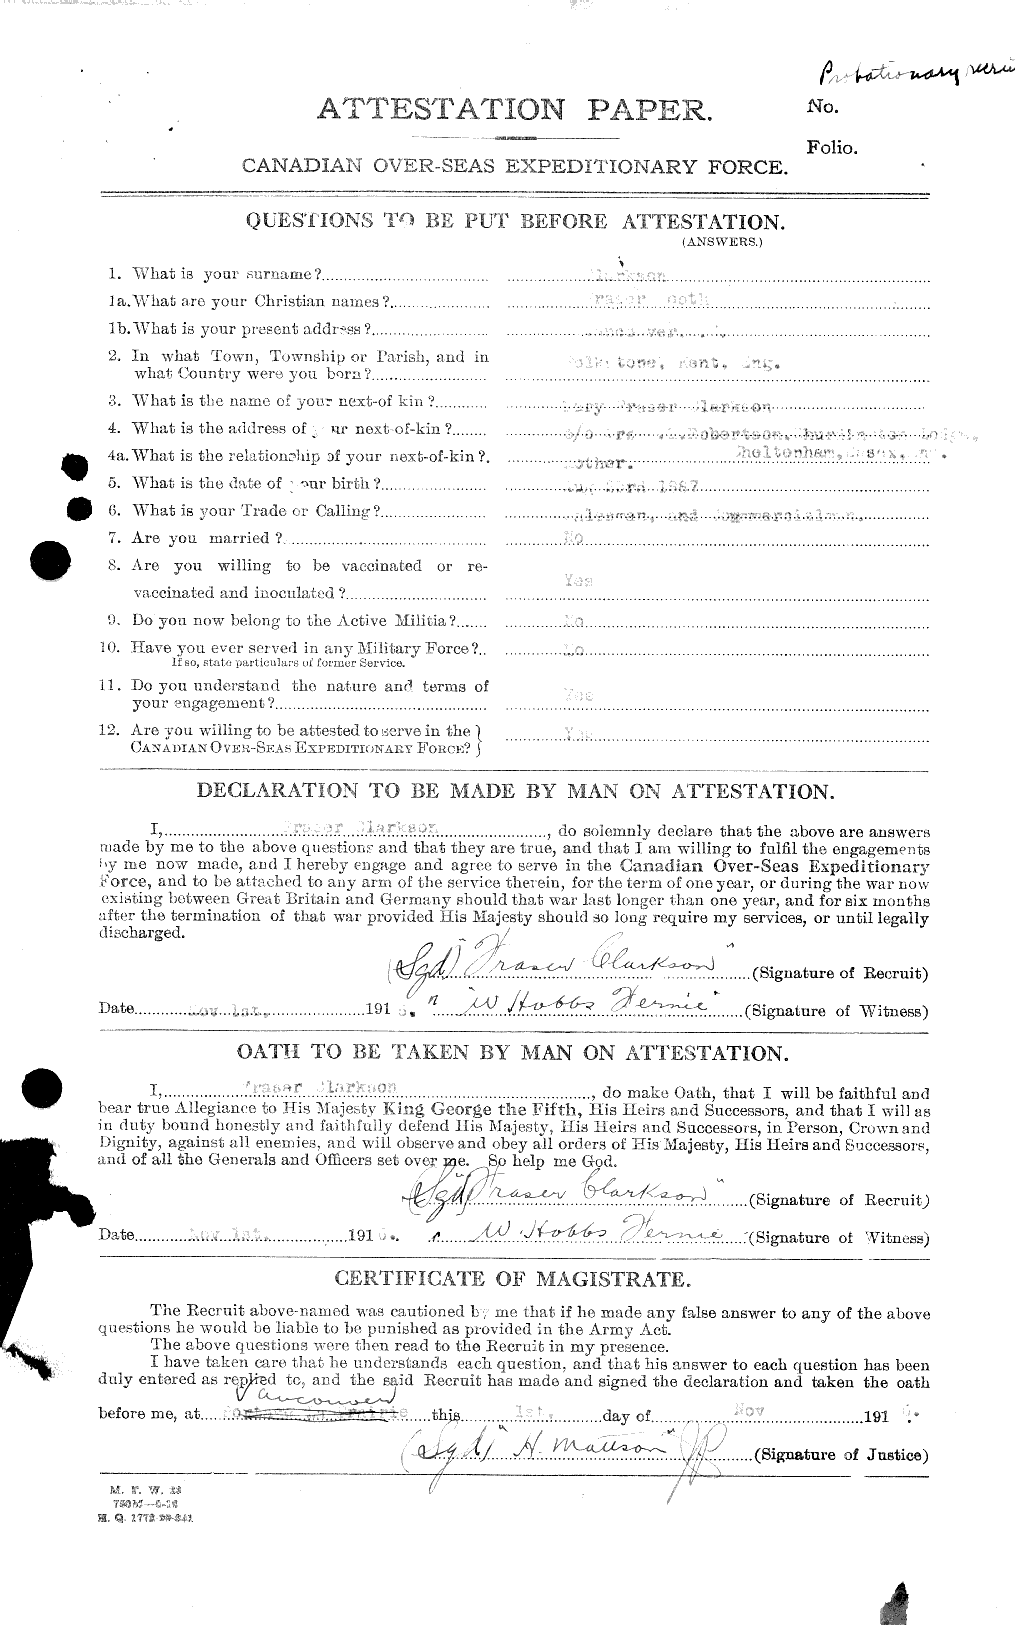 Dossiers du Personnel de la Première Guerre mondiale - CEC 023638a